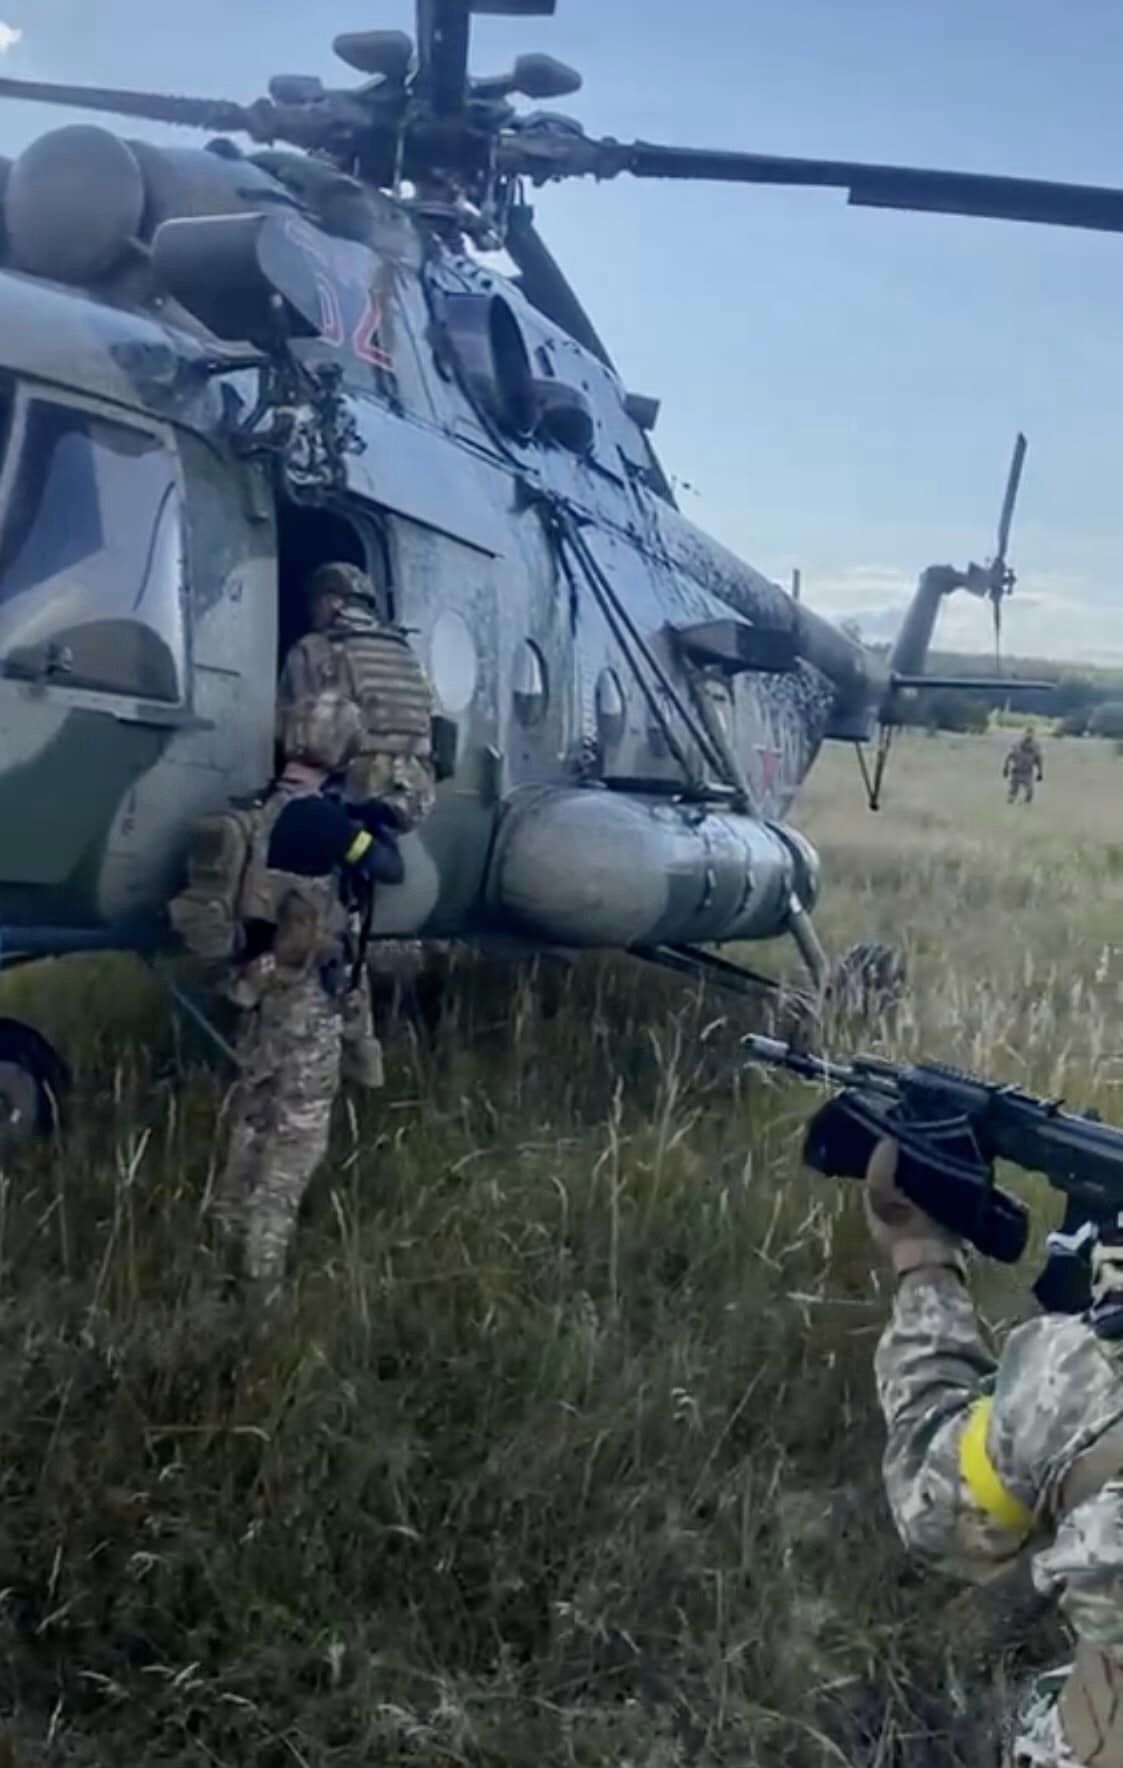 Операция "Синица". Новые фото с российским вертолетом Ми-8, который ГУР выманило в Украину